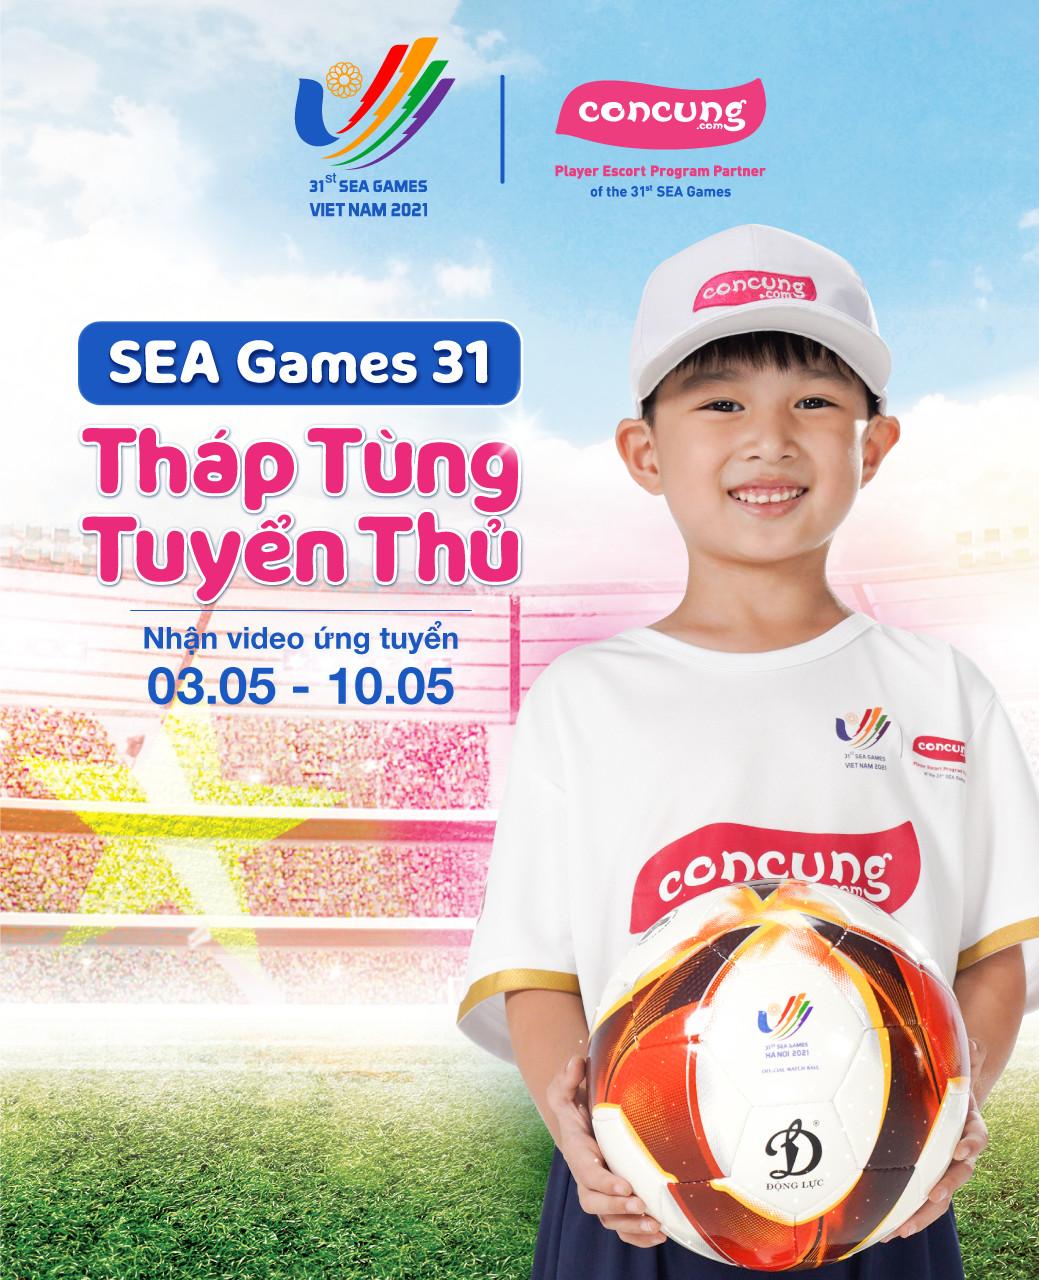 Lần đầu tiên trong lịch sử bóng đá SEA Games, Việt Nam tìm kiếm em bé quyền lực tháp tùng cầu thủ ra sân - Ảnh 3.